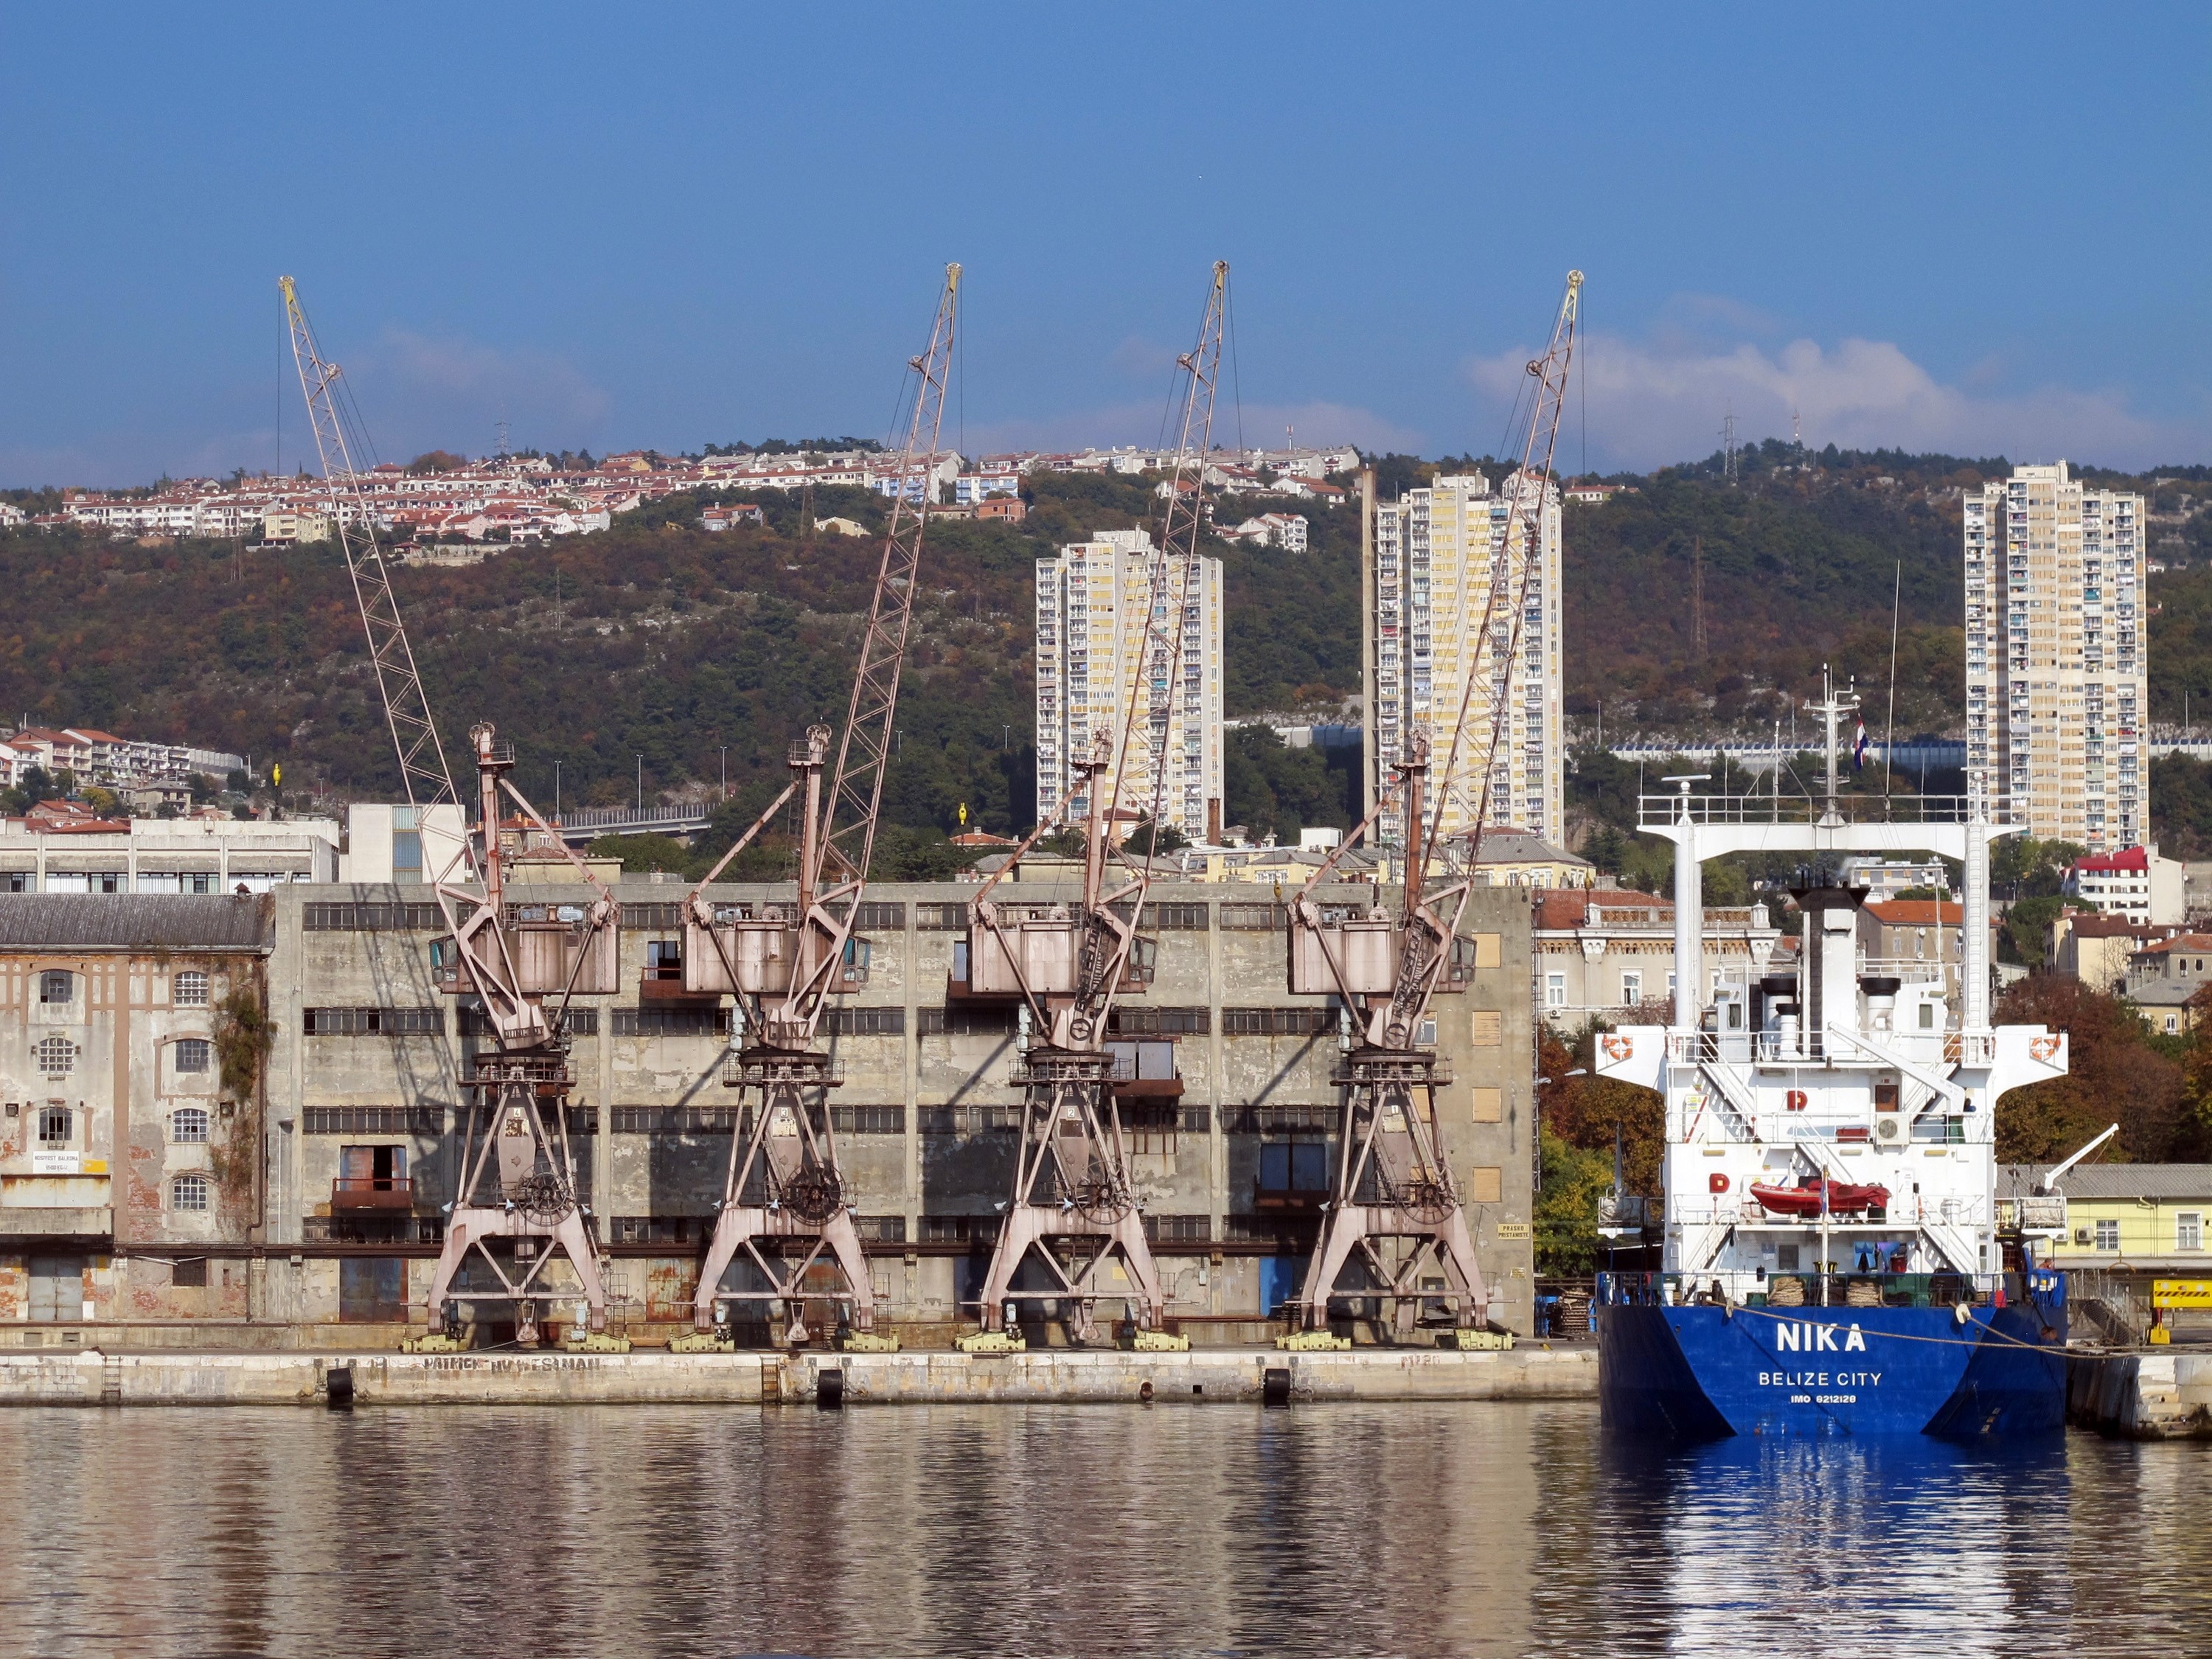 05.11.2011. Rijeka - Rijecka luka, dizalice i brodovi, ilustracija.
Photo: Goran Kovacic/PIXSELL